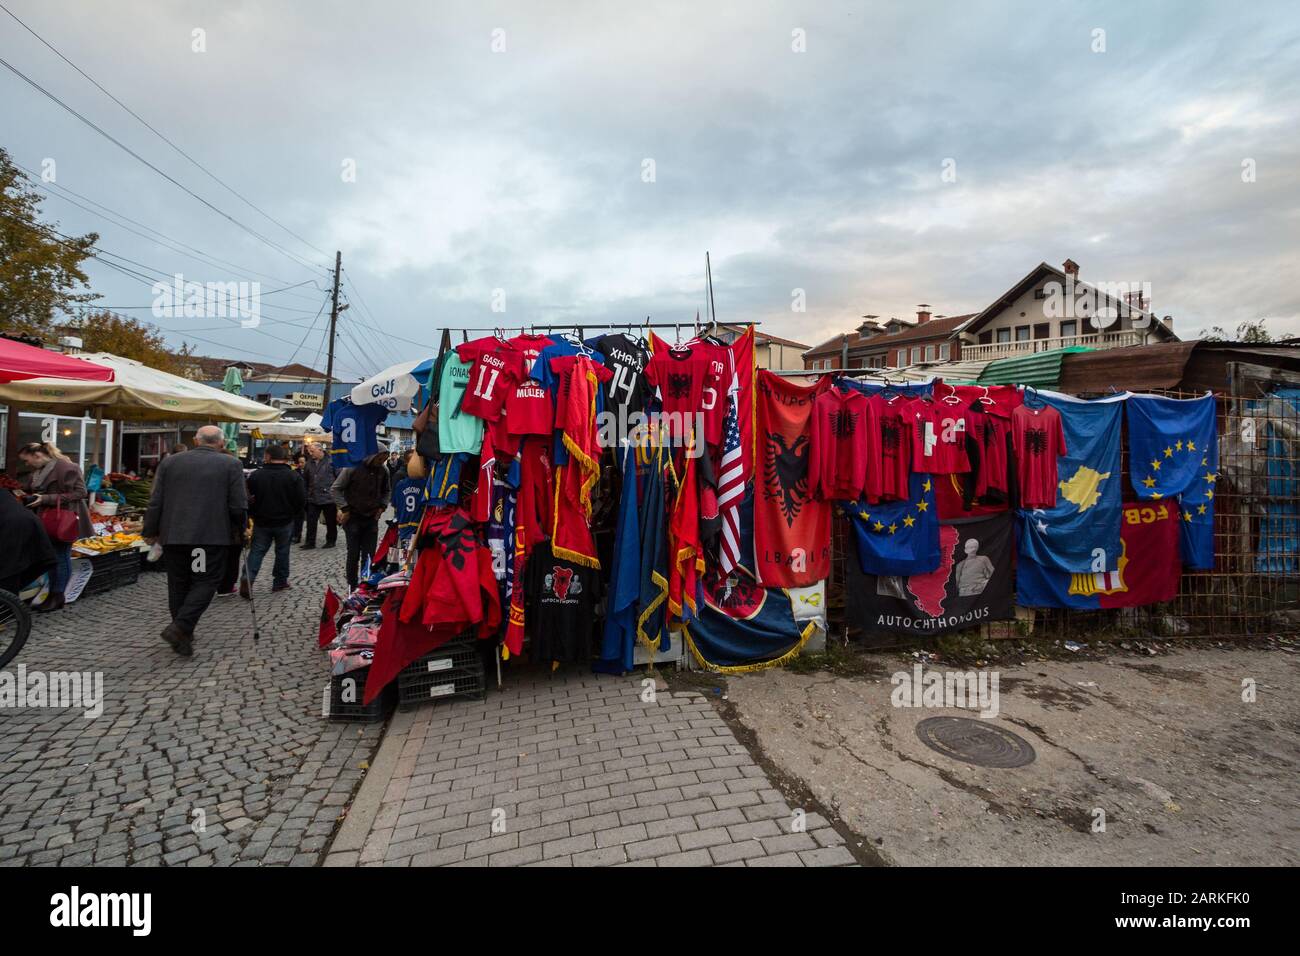 Prishtina, KOSOVO - 11. NOVEMBER 2016: Stall auf dem Markt in Prishtina mit albanischen Flaggen und anderen nationalen Artikeln zum Verkauf. Pristina ist die kosovarische Ca Stockfoto